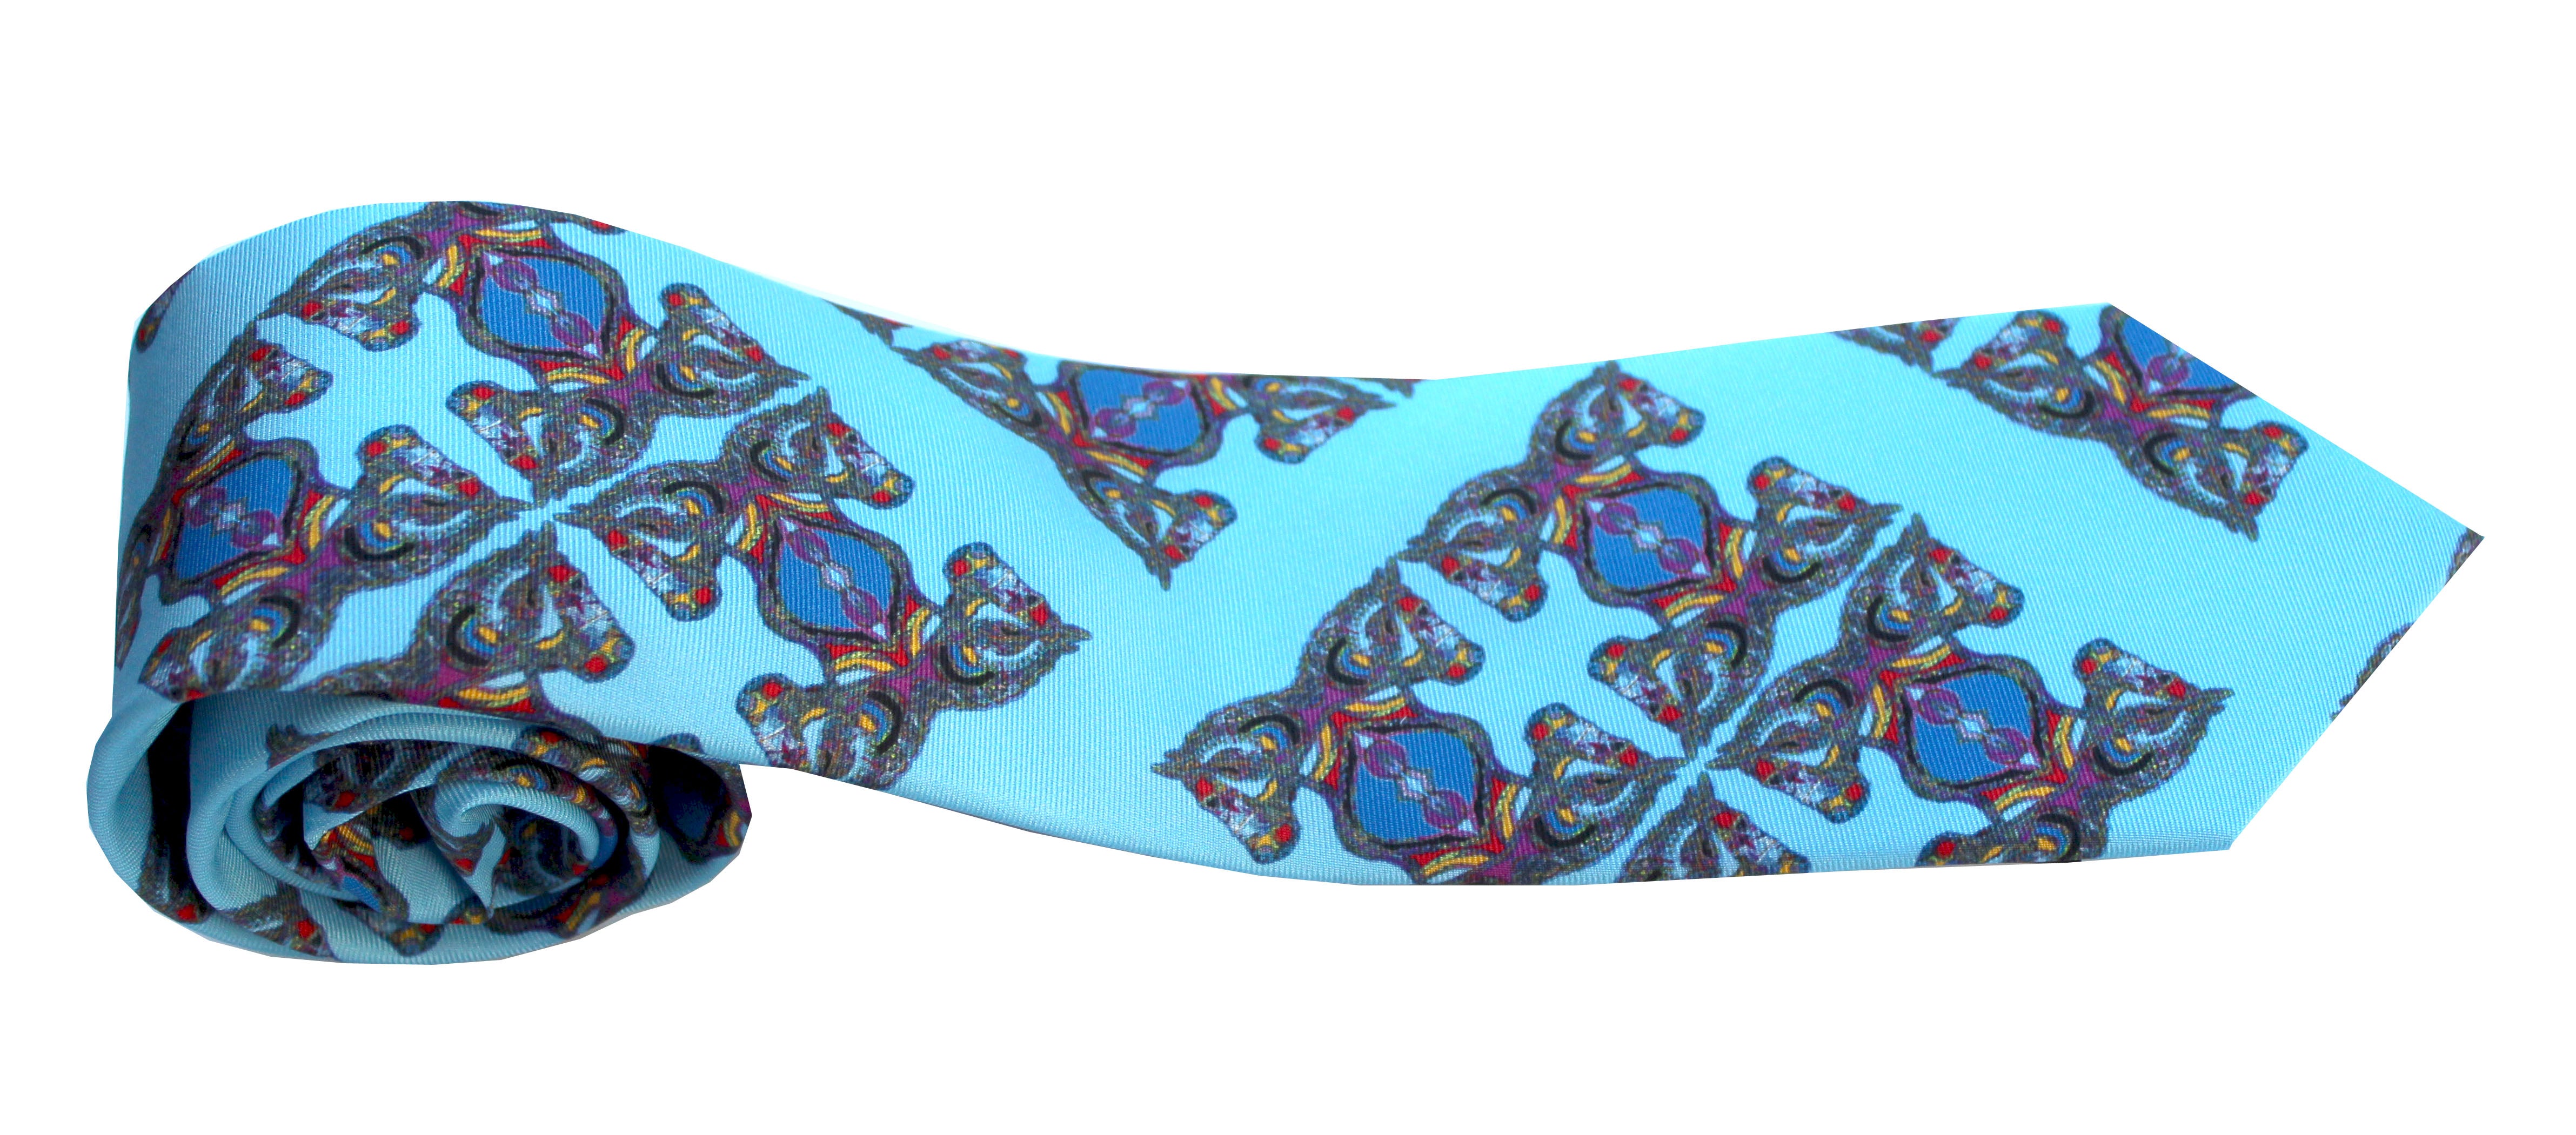 Blue Horse Corsage Design, 100% Silk Twill Tie